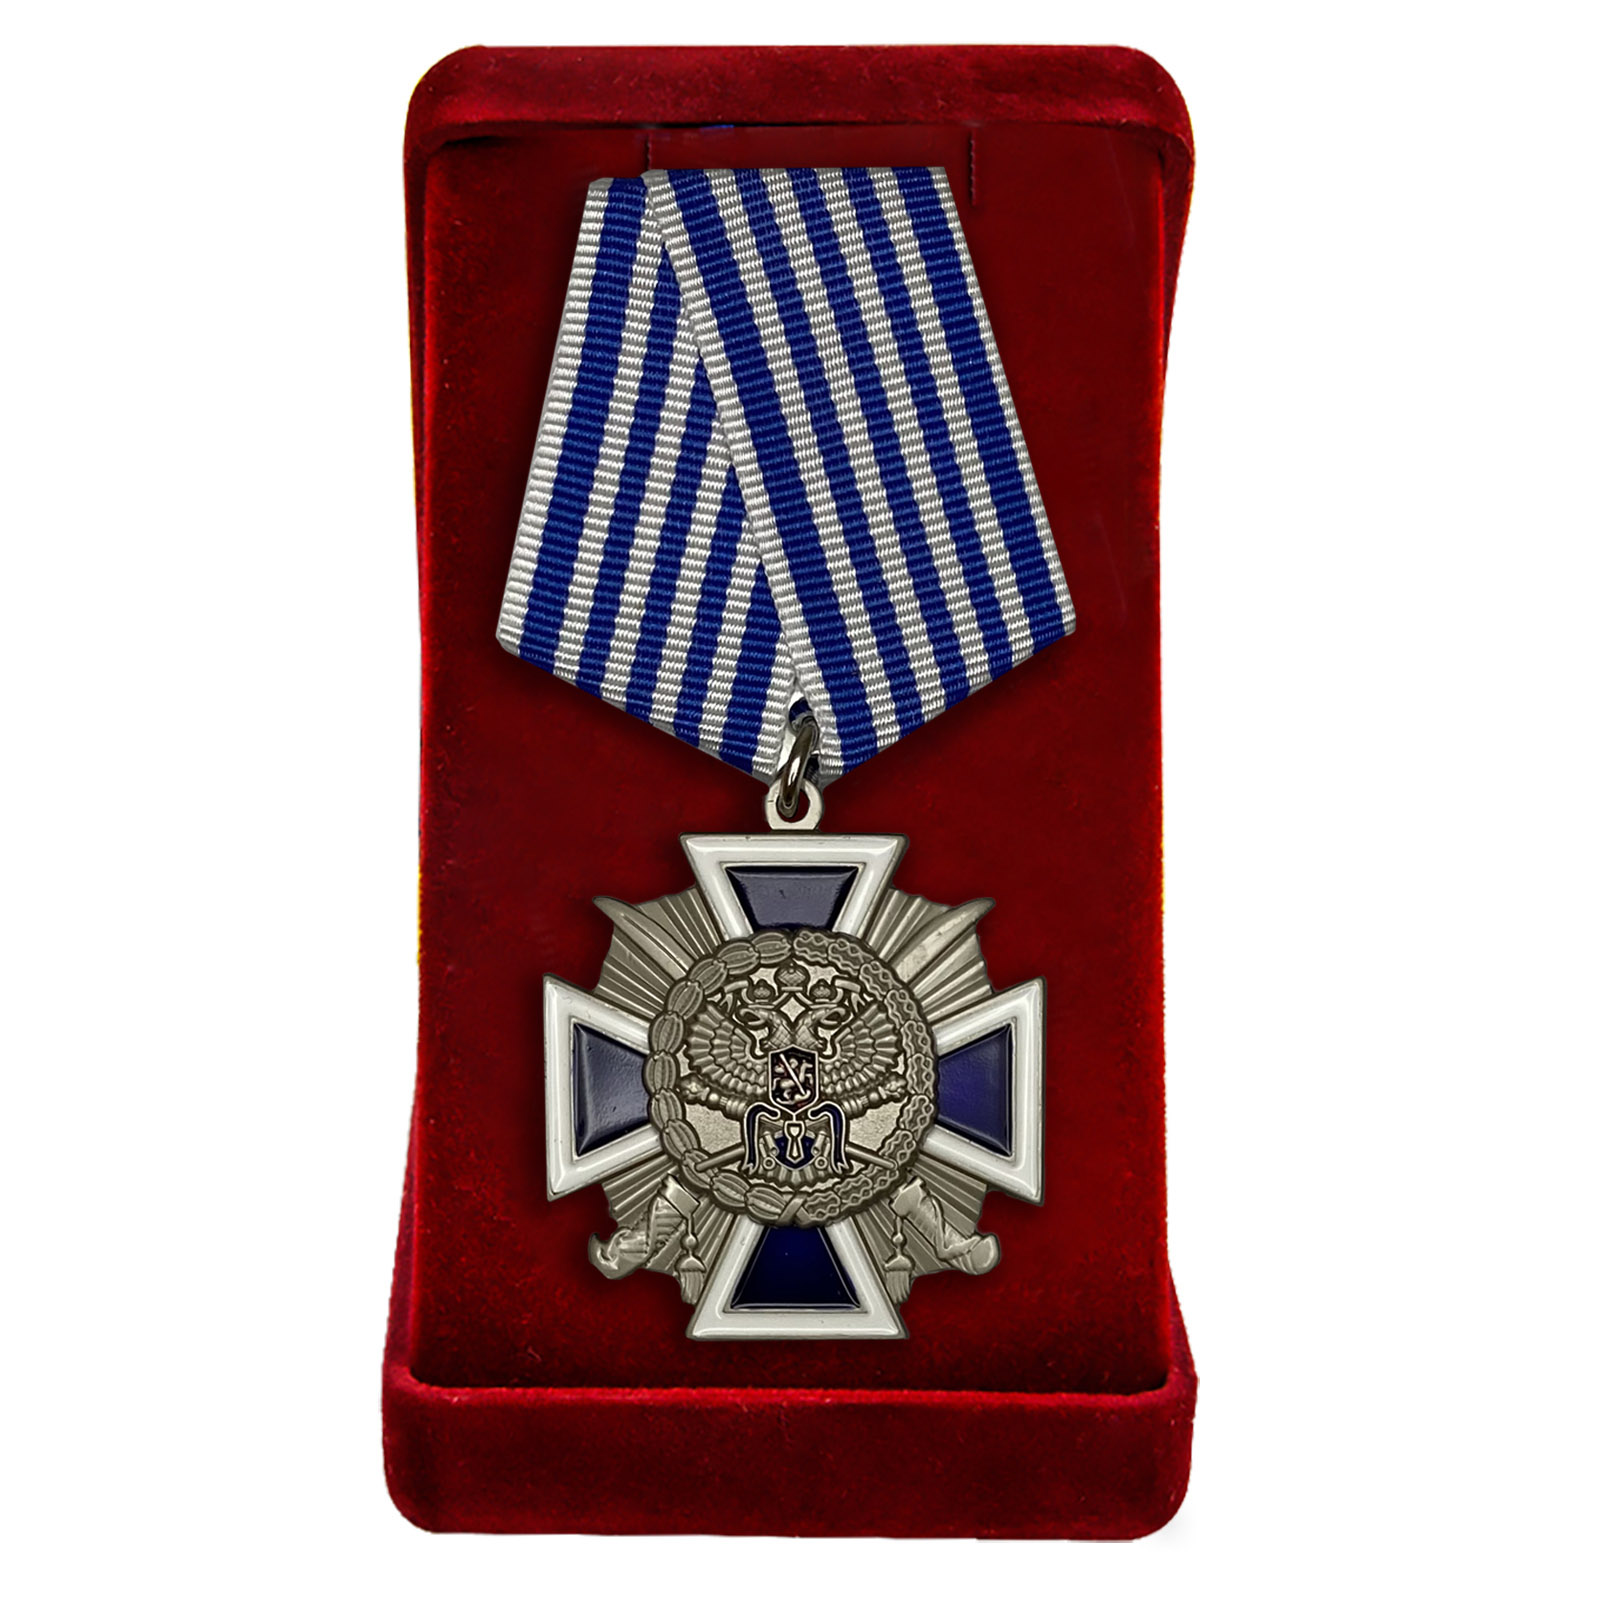 Наградной крест "За заслуги перед казачеством России" 4-й степени